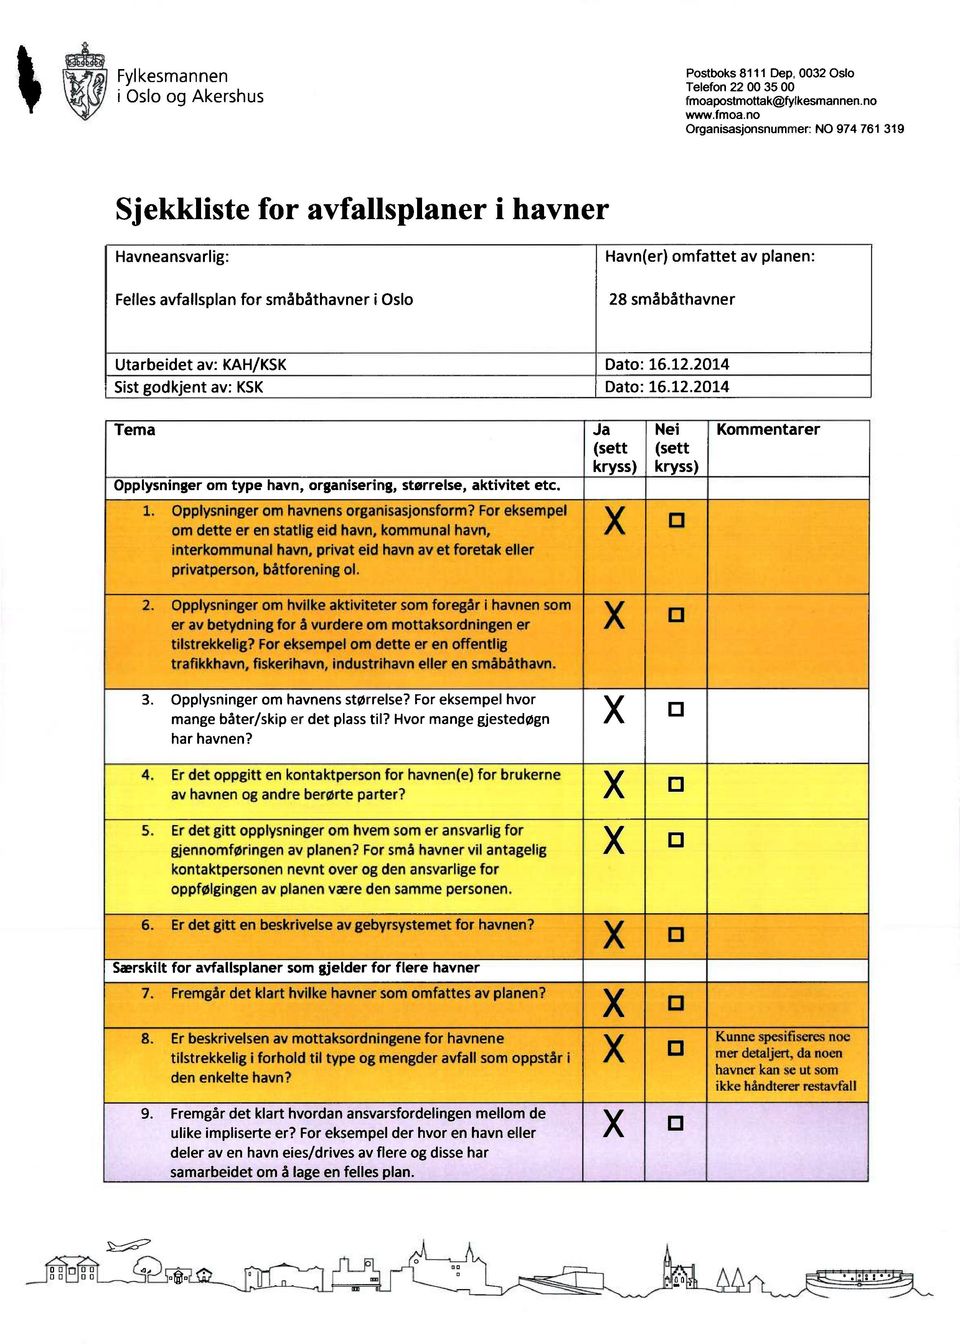 no Organisasjonsnummer: NO 974 761 319 Sjekkliste for avfallsplaner i havner Havneansvarlig: Fellesavfallsplanfor småbåthavneri Oslo Havn(er)omfattet av planen: 28 småbåthavner Utarbeidet av: KAH/KSK